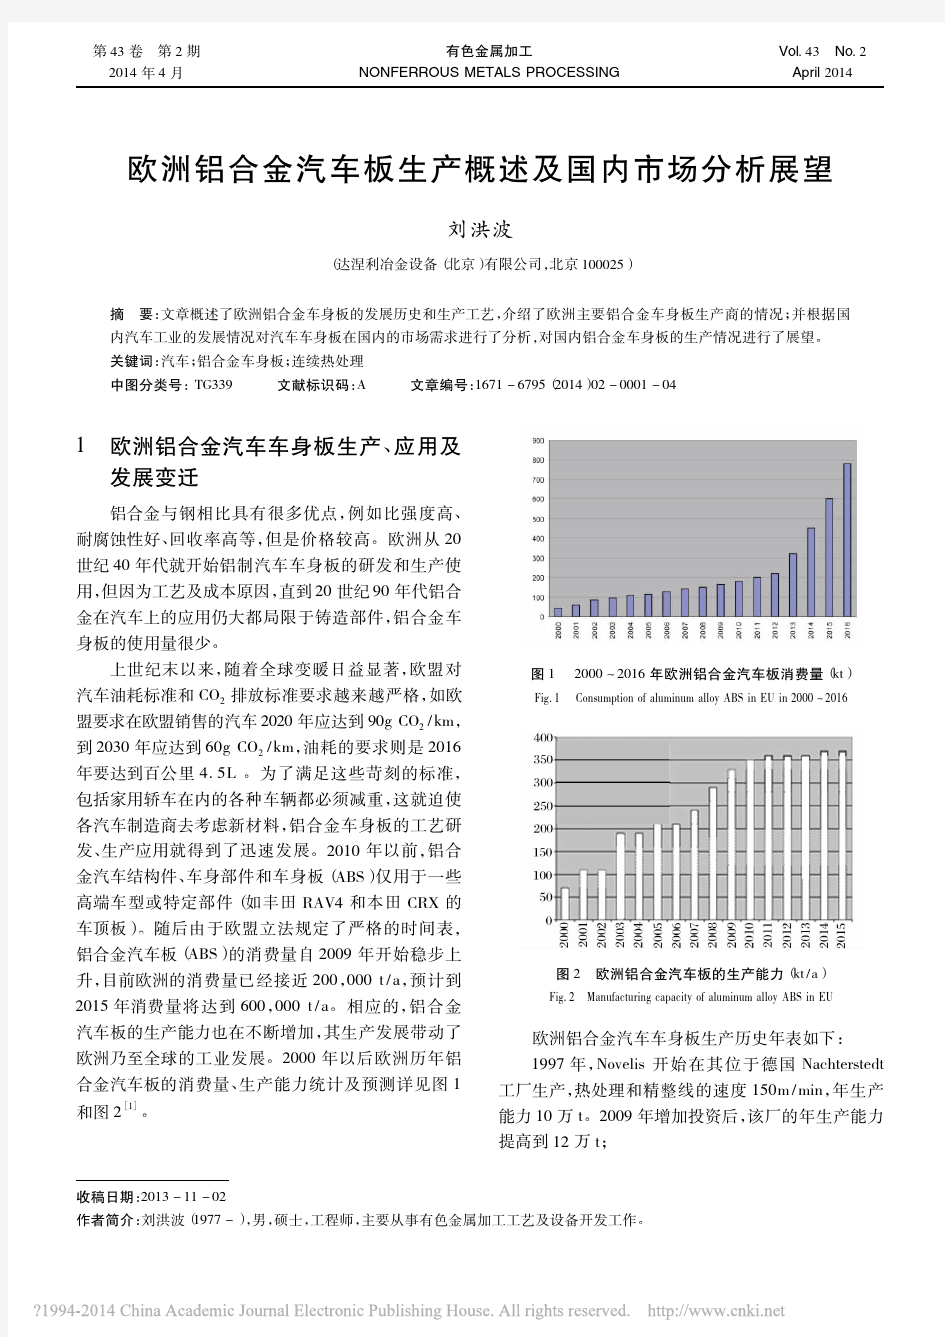 欧洲铝合金汽车板生产概述及国内市场分析展望_刘洪波